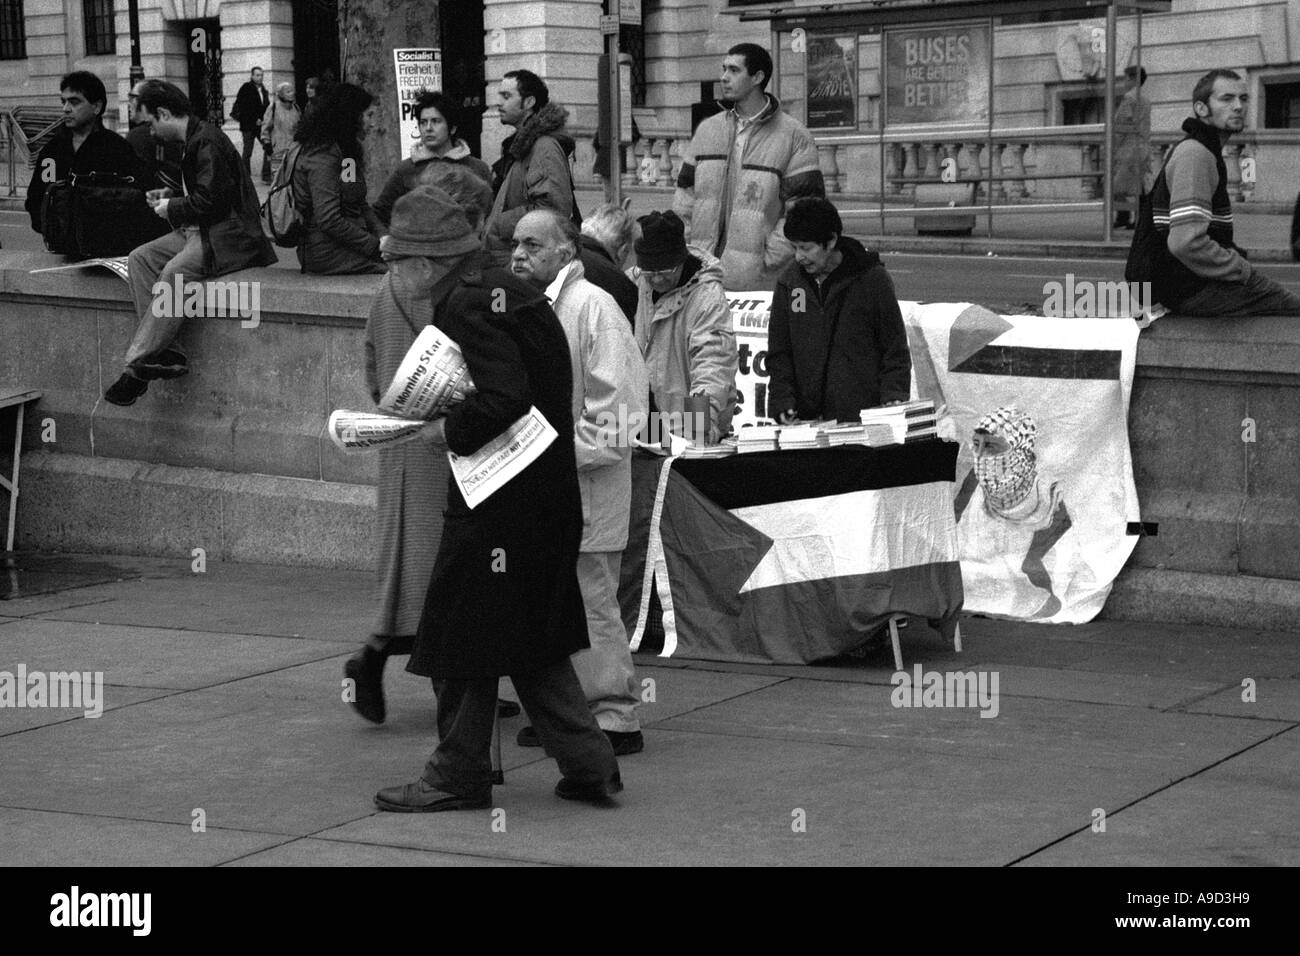 Guerre en Irak contre manifestation à Trafalgar Square Londres Angleterre Royaume-Uni Europe Banque D'Images